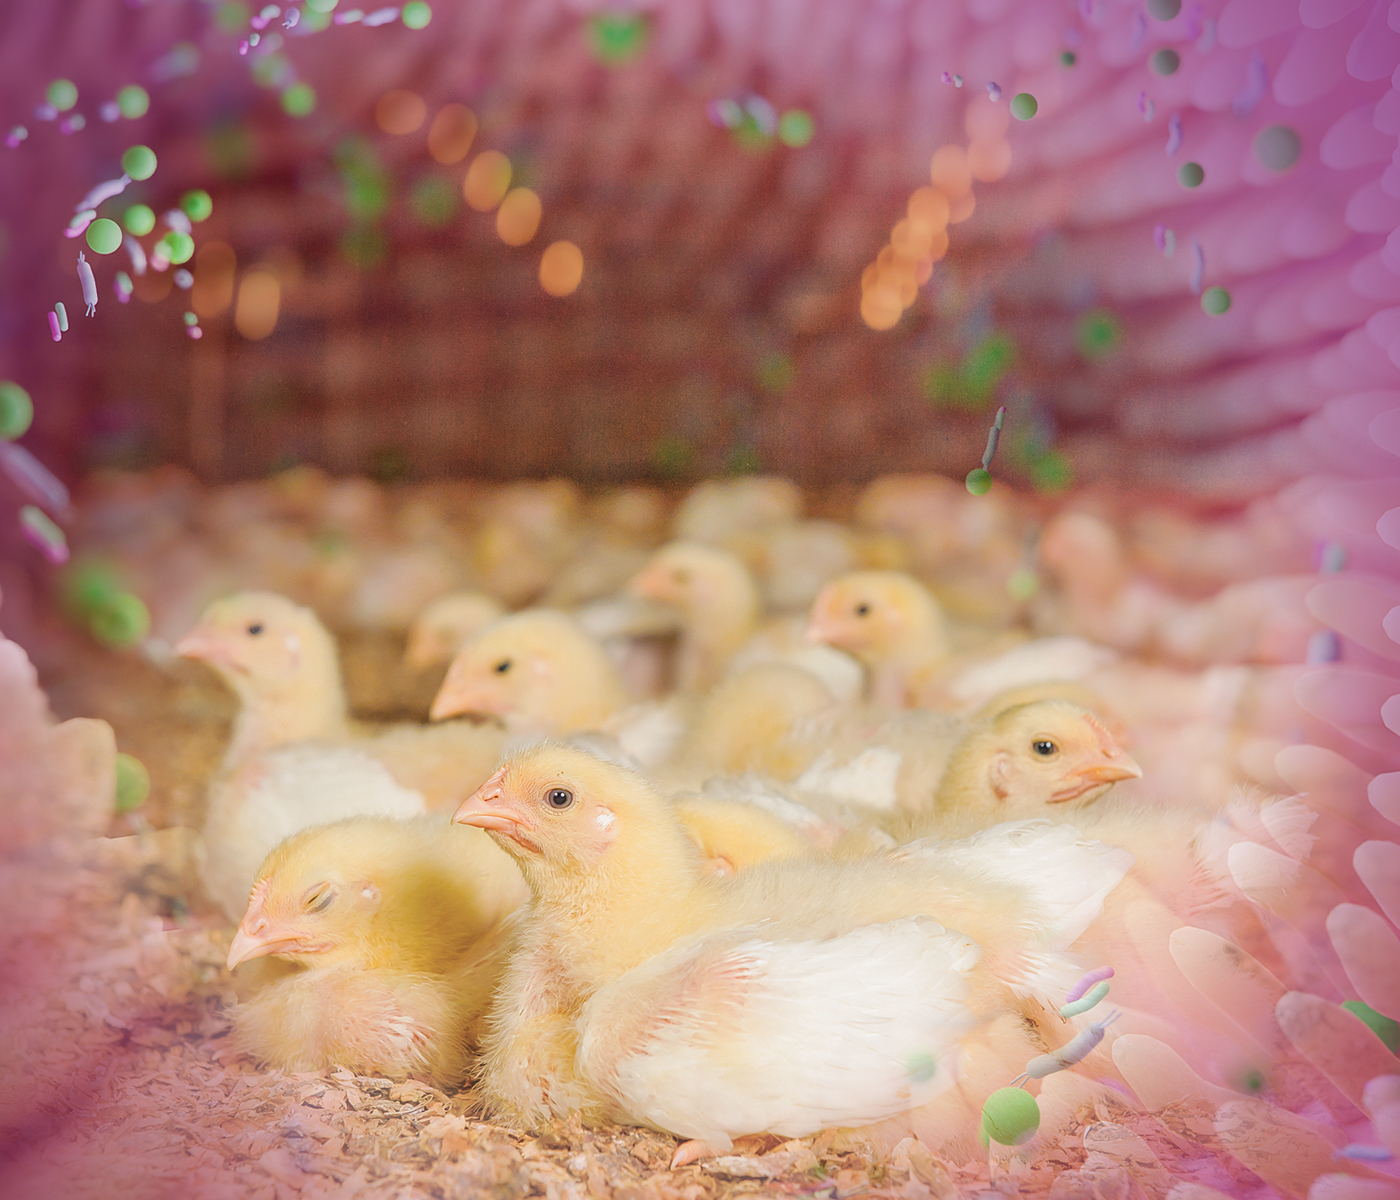 Producción de aves libre de antibióticos como promotores de crecimiento en el alimento